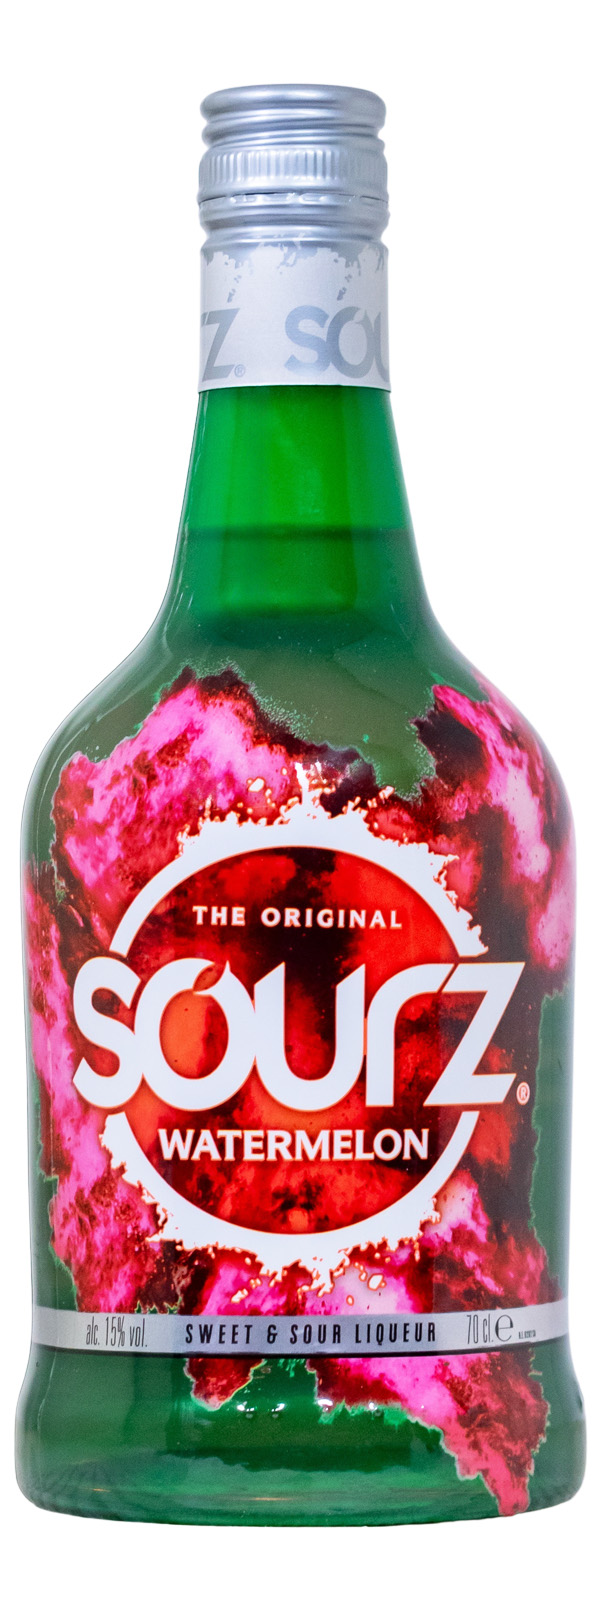 Sourz Watermelon - 0,7L 15% vol